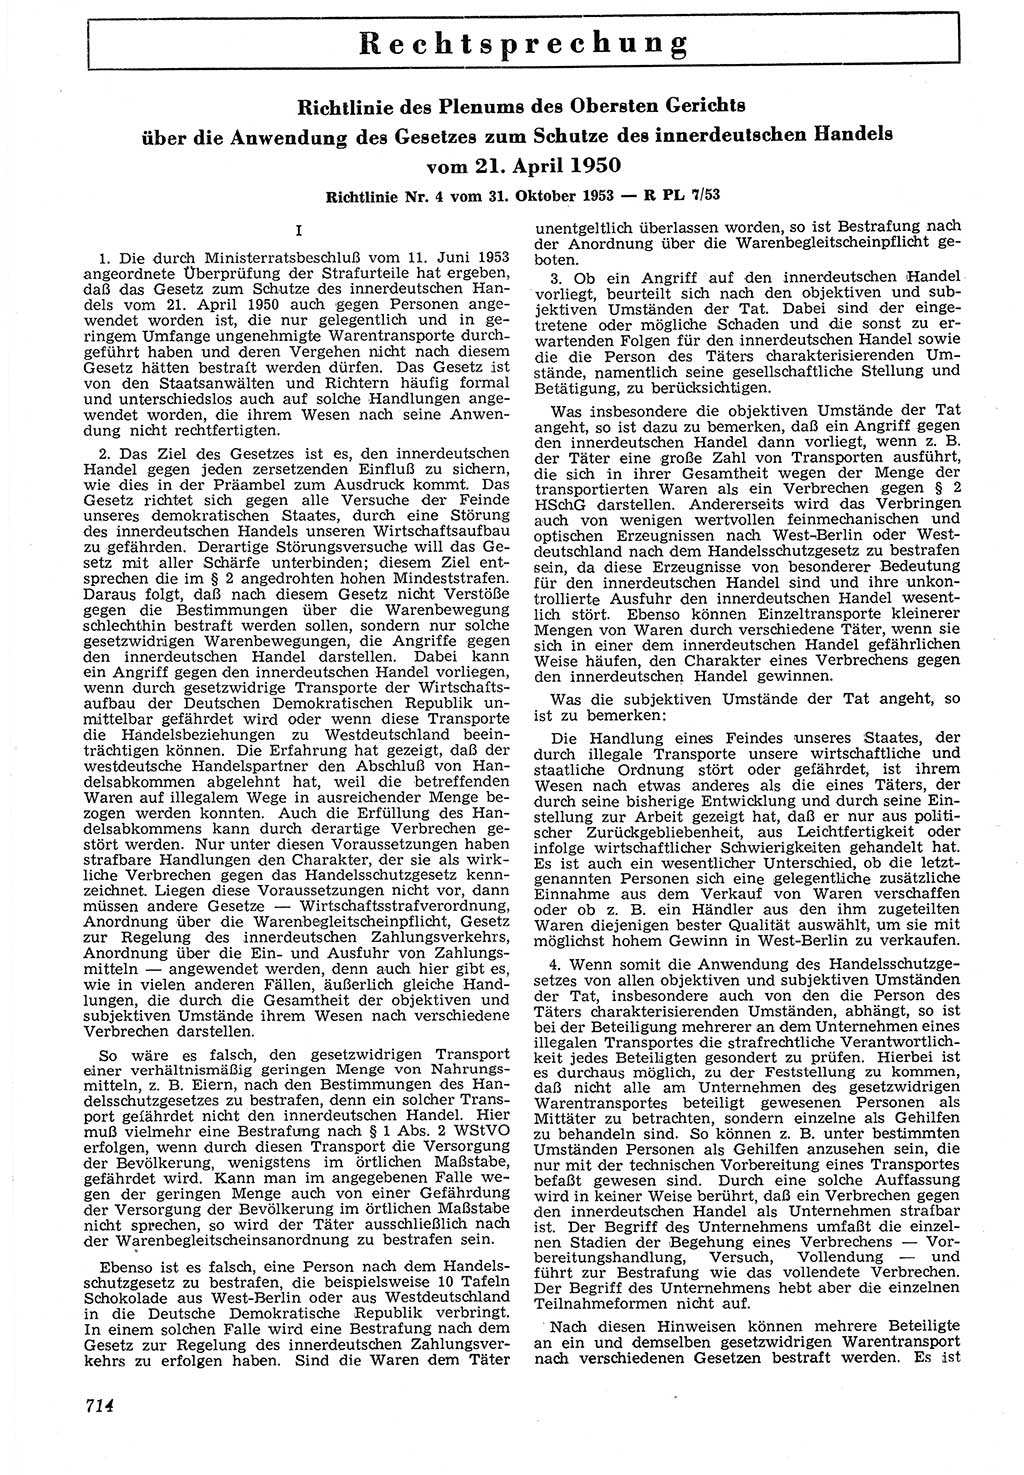 Neue Justiz (NJ), Zeitschrift für Recht und Rechtswissenschaft [Deutsche Demokratische Republik (DDR)], 7. Jahrgang 1953, Seite 714 (NJ DDR 1953, S. 714)